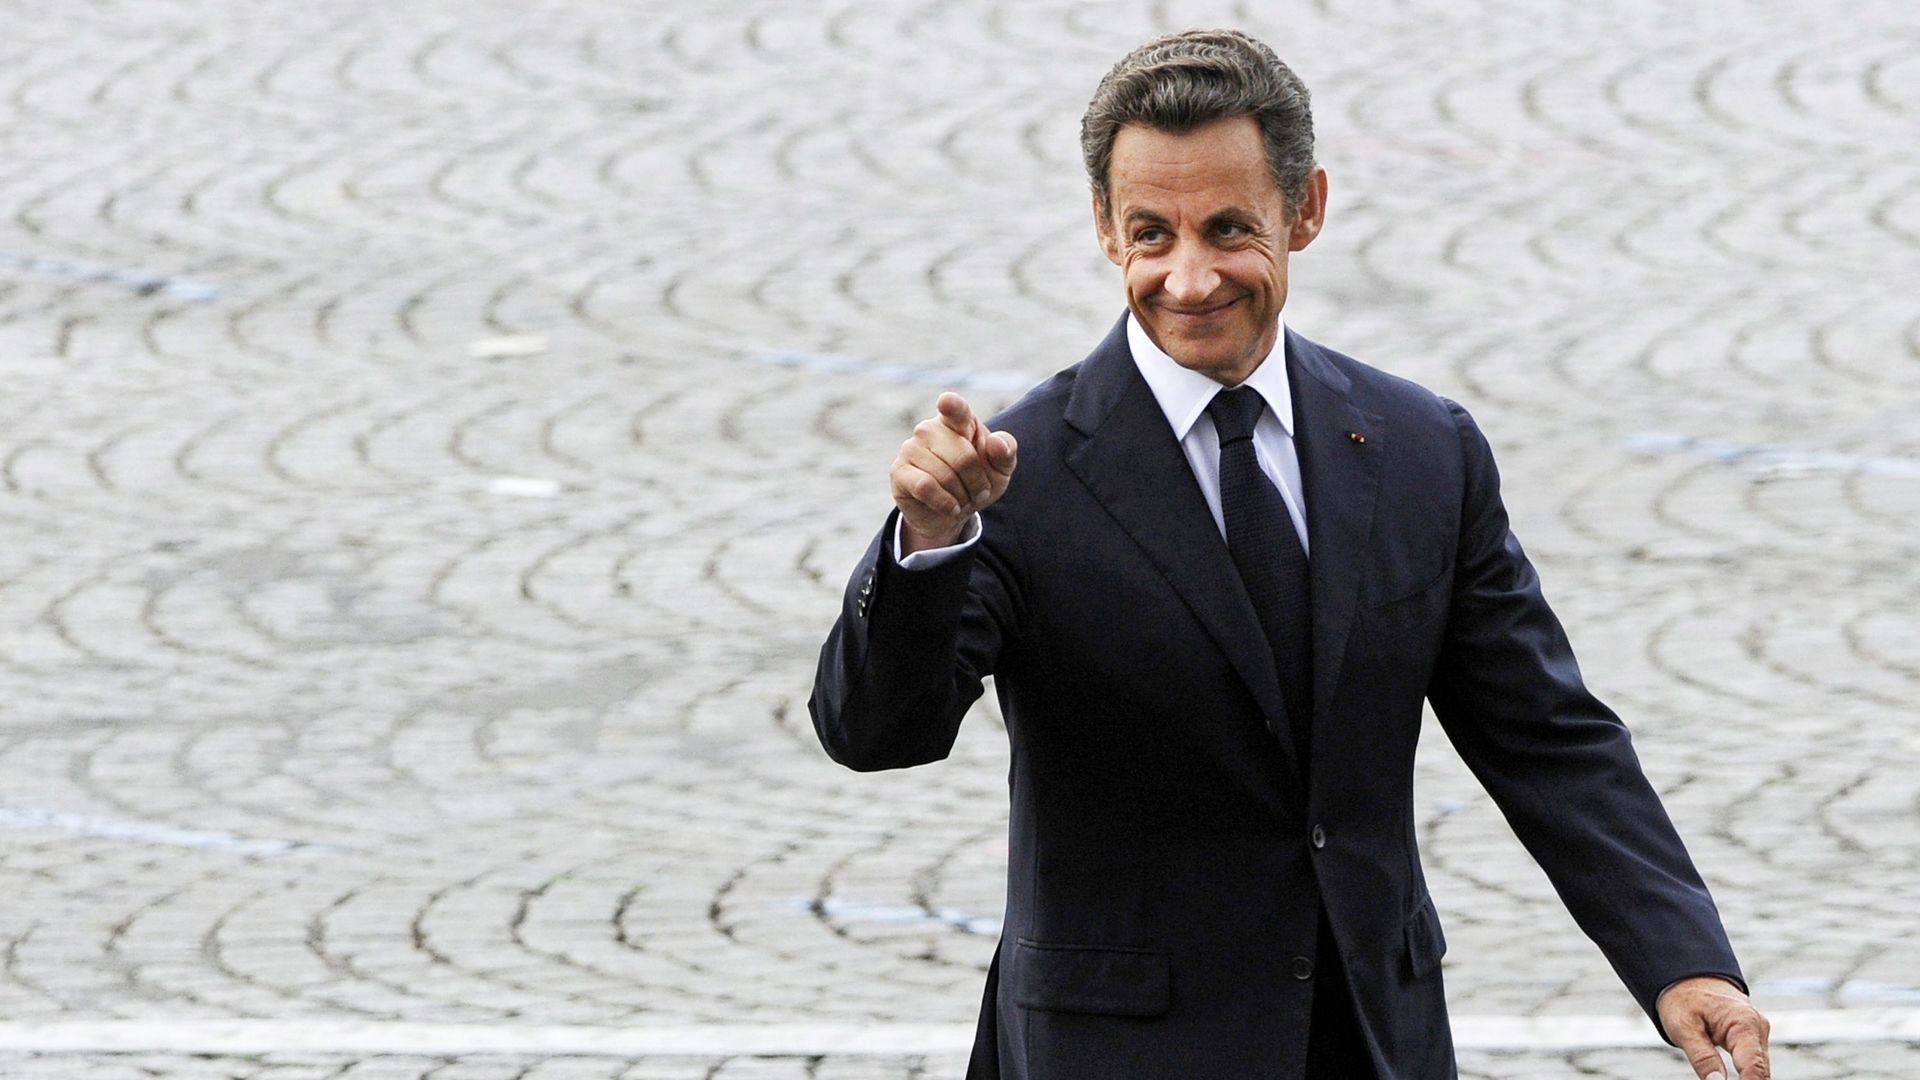 Ce vieux tweet de Nicolas Sarkozy qui refait surface après sa condamnation dans le dossier dit "Bygmalion" et qui agite la toile